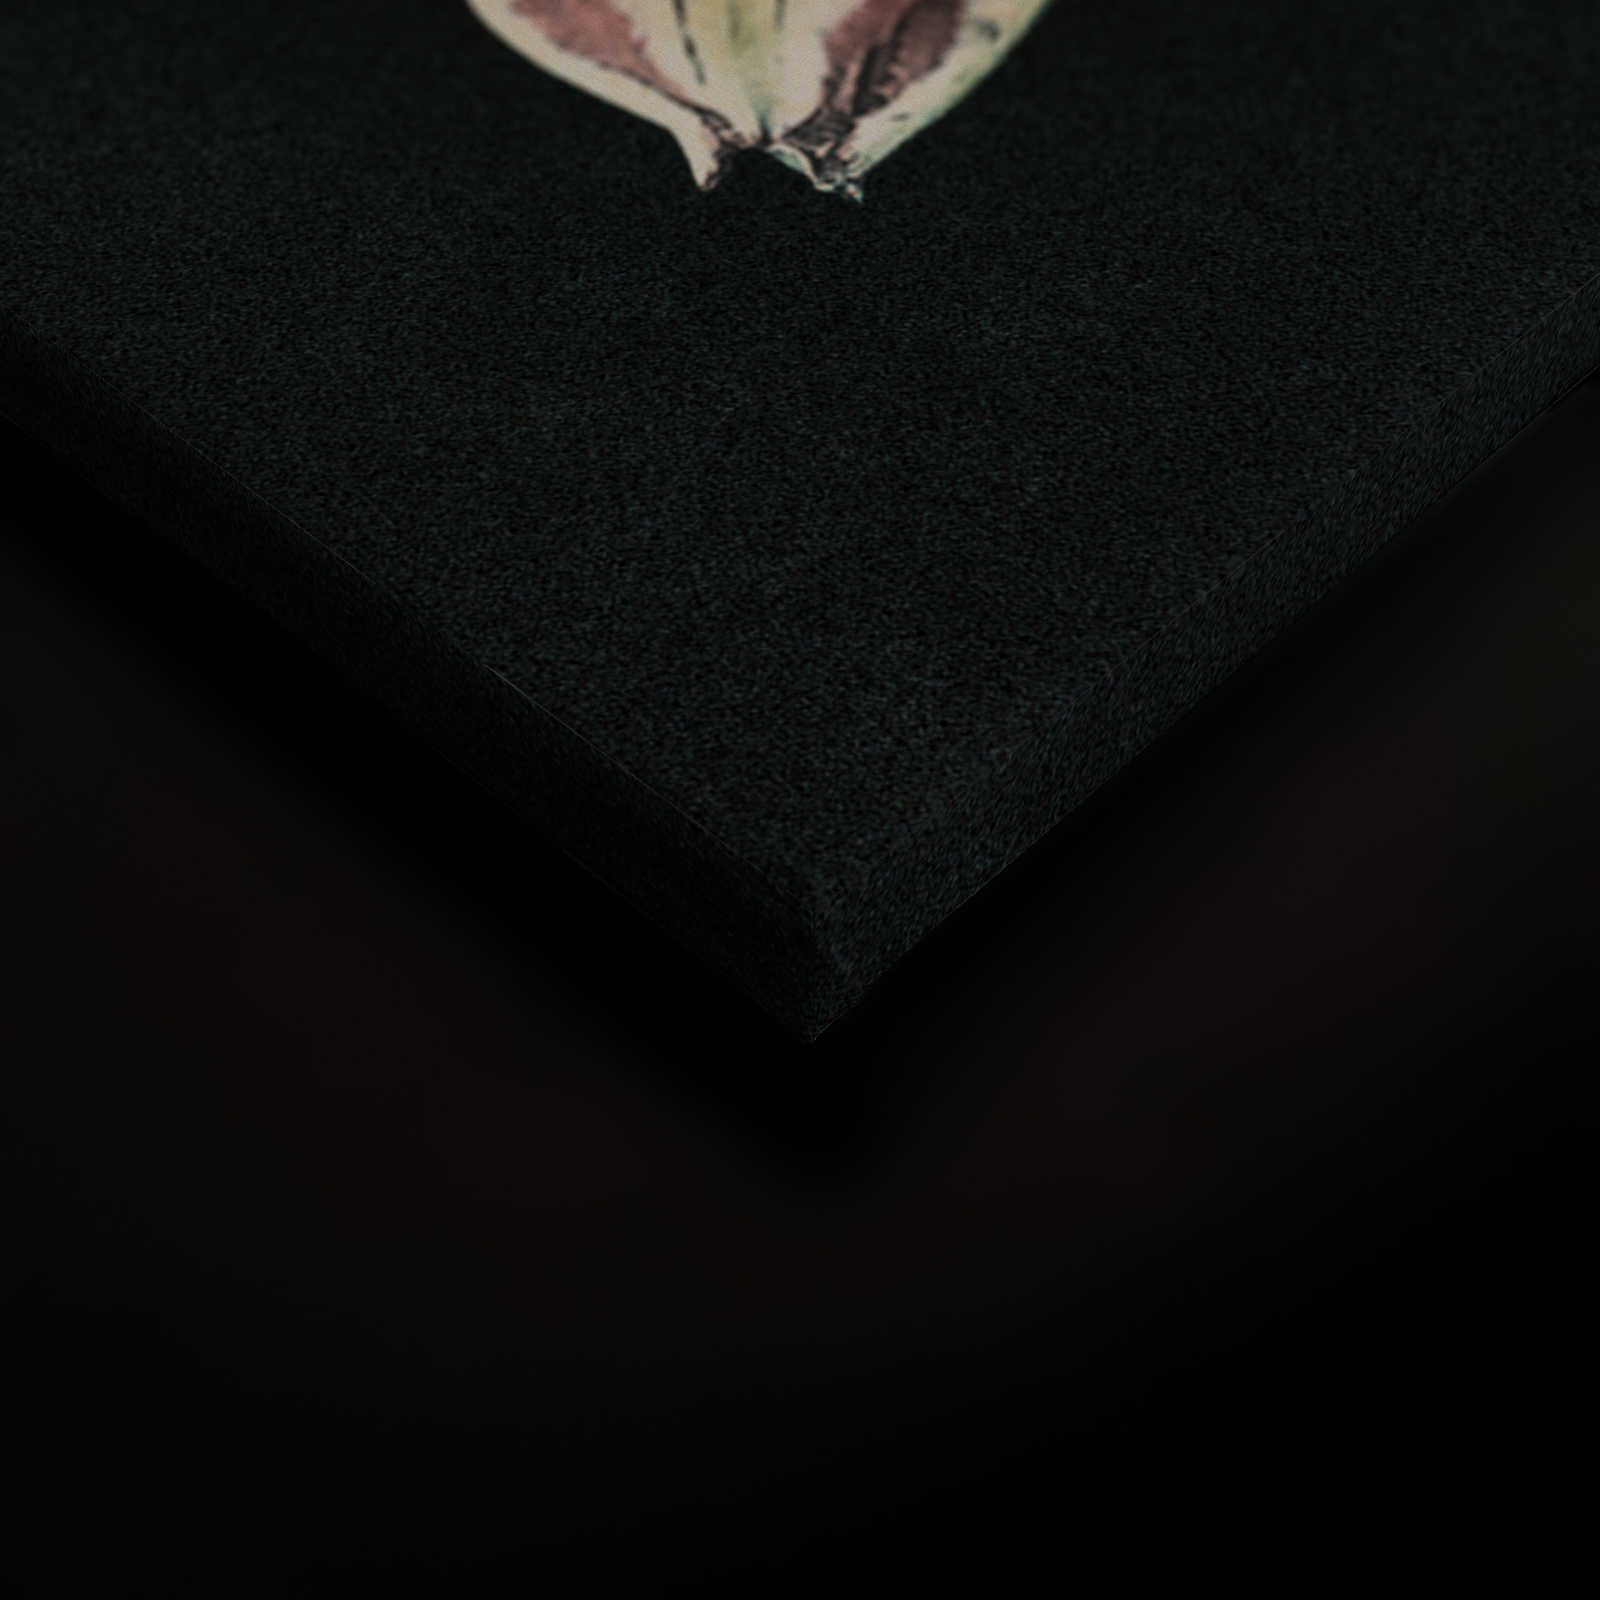             Drama queen 1 - Cuadro lienzo Bouquet con fondo oscuro en estructura de cartón - 0,90 m x 0,60 m
        